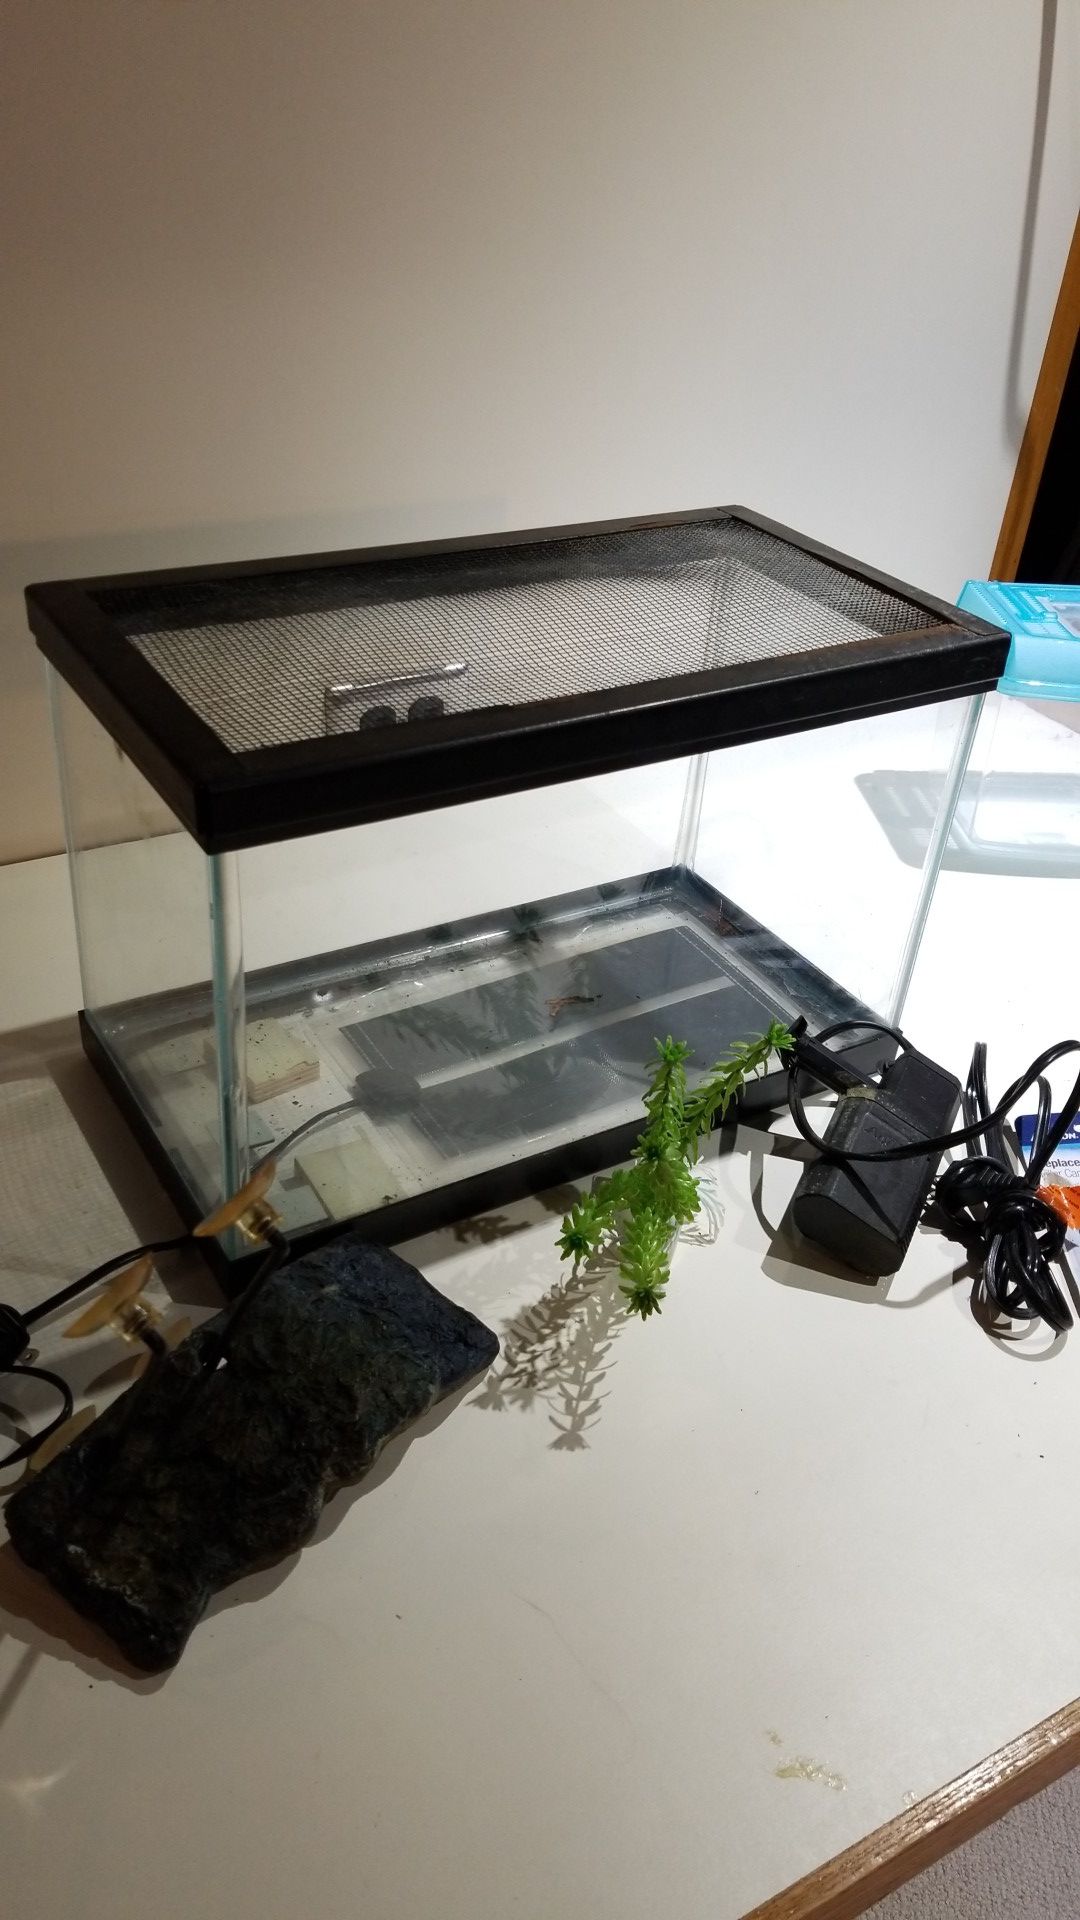 Aquarium 2+ gallon with screen top